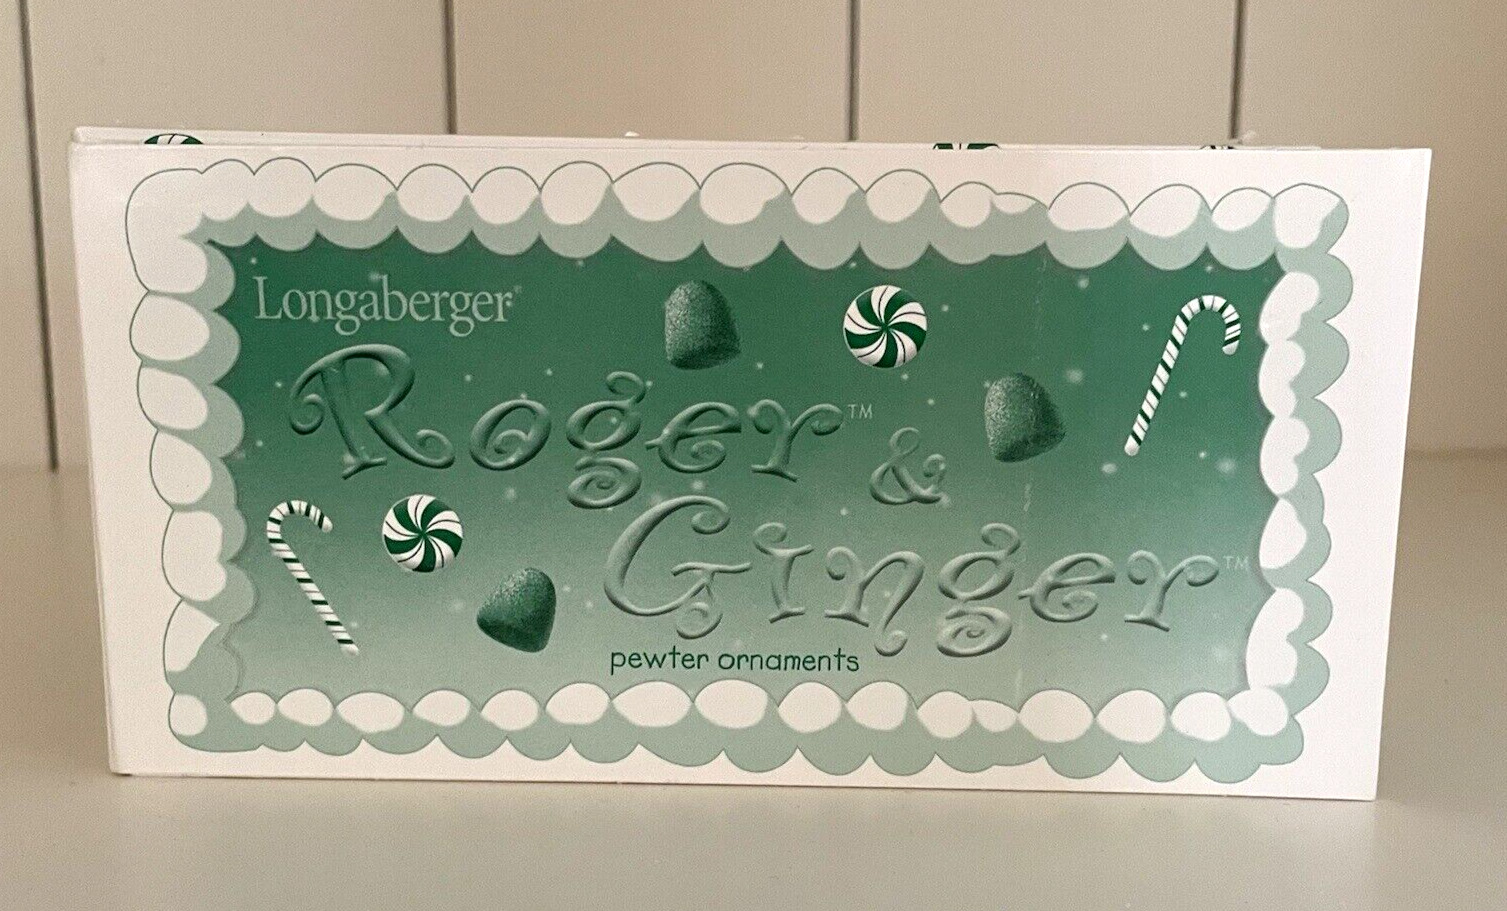 Longaberger Roger & Ginger Pewter Gingerbread Men Christmas Ornaments NOS